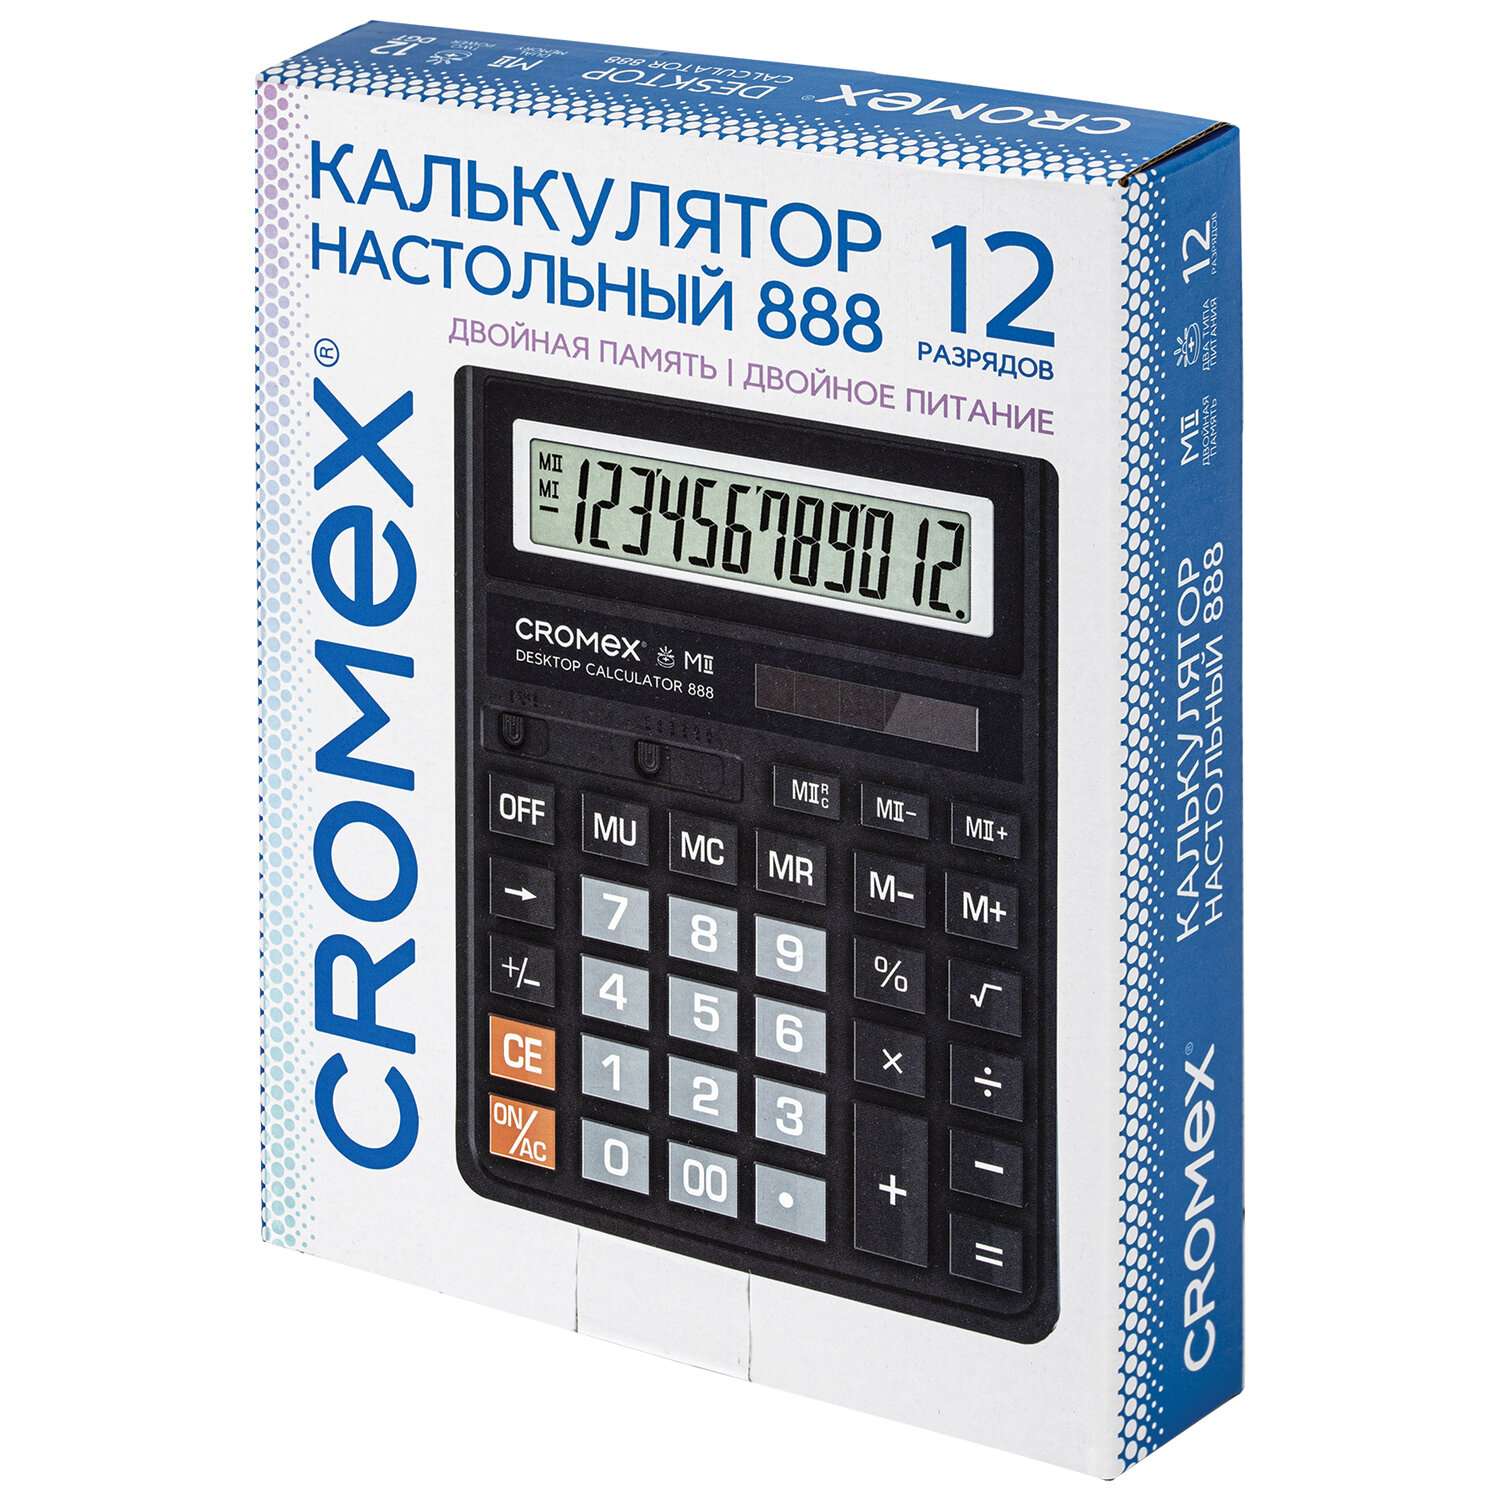 Калькулятор настольный CROMEX большой бухгалтерский 12 разрядов - фото 3